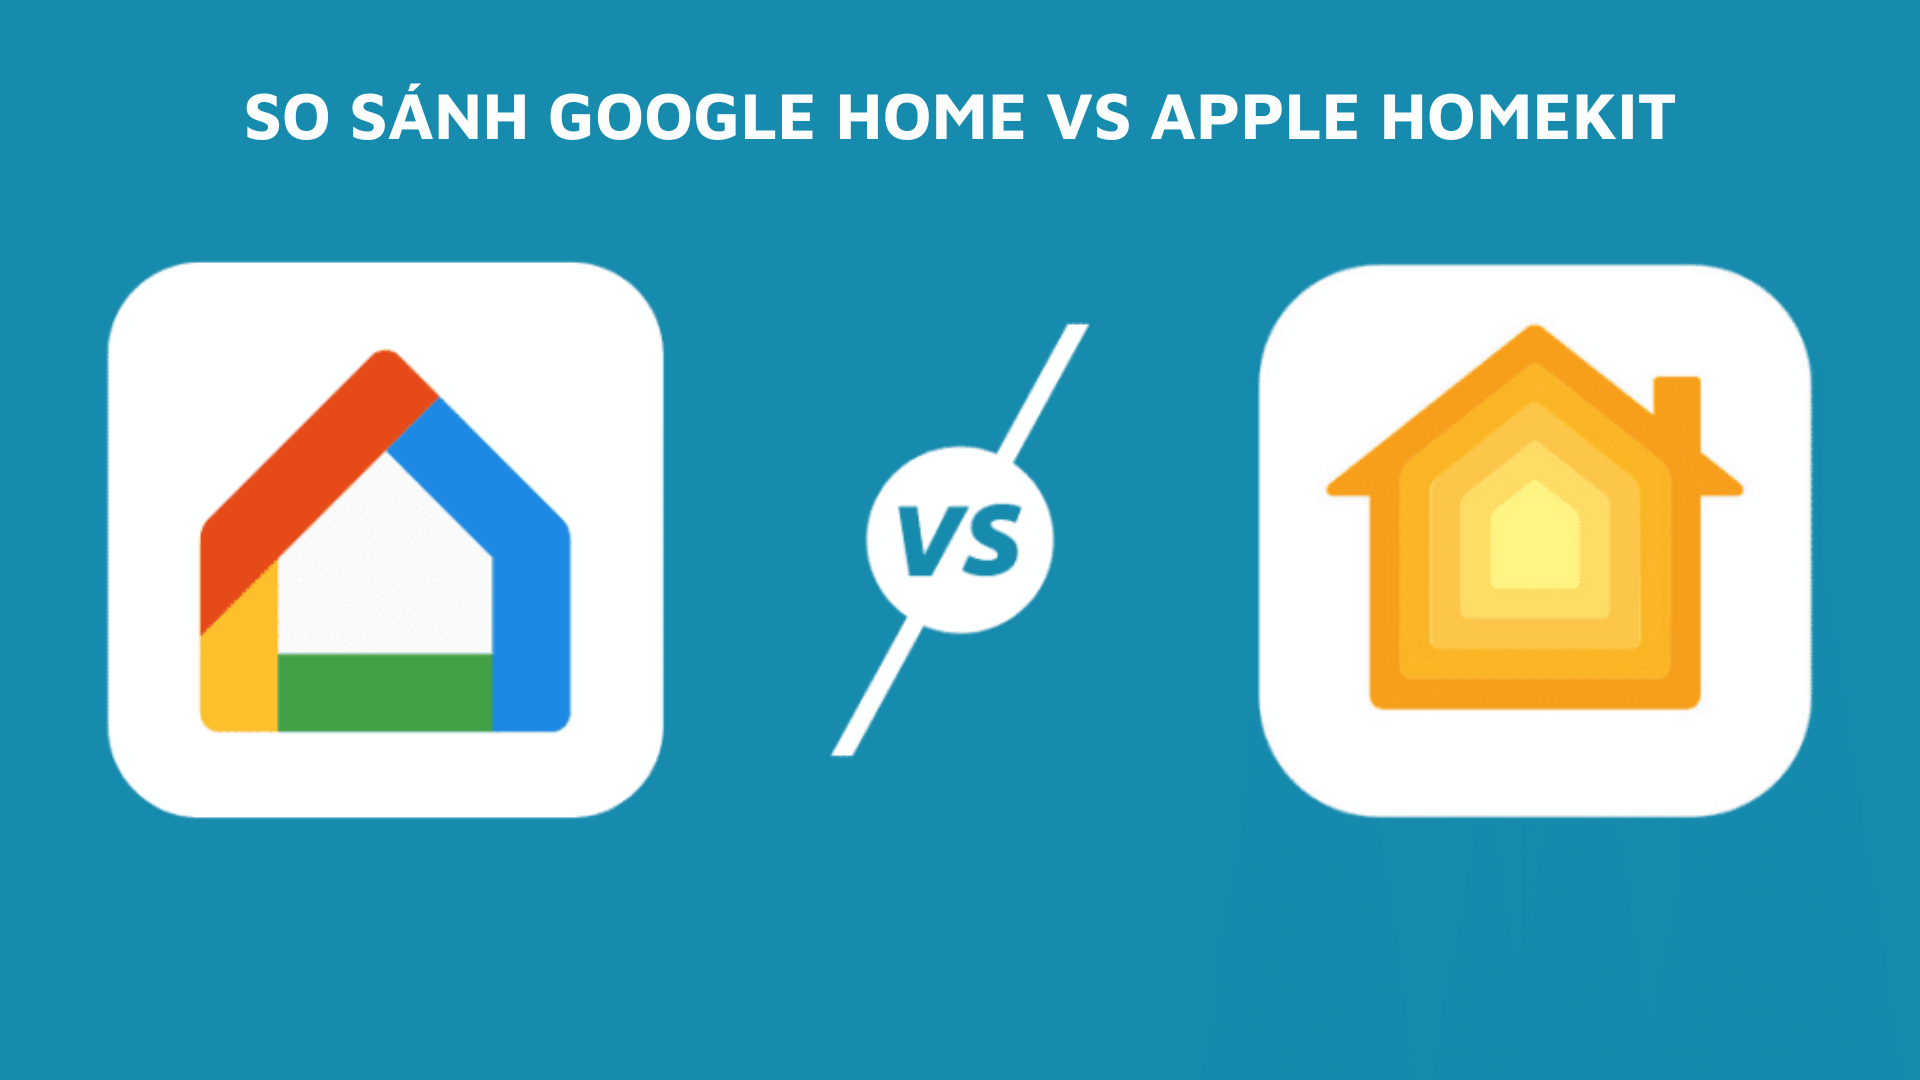 So sánh Googlehome và Apple Homekit : Top 5 điều cần biết